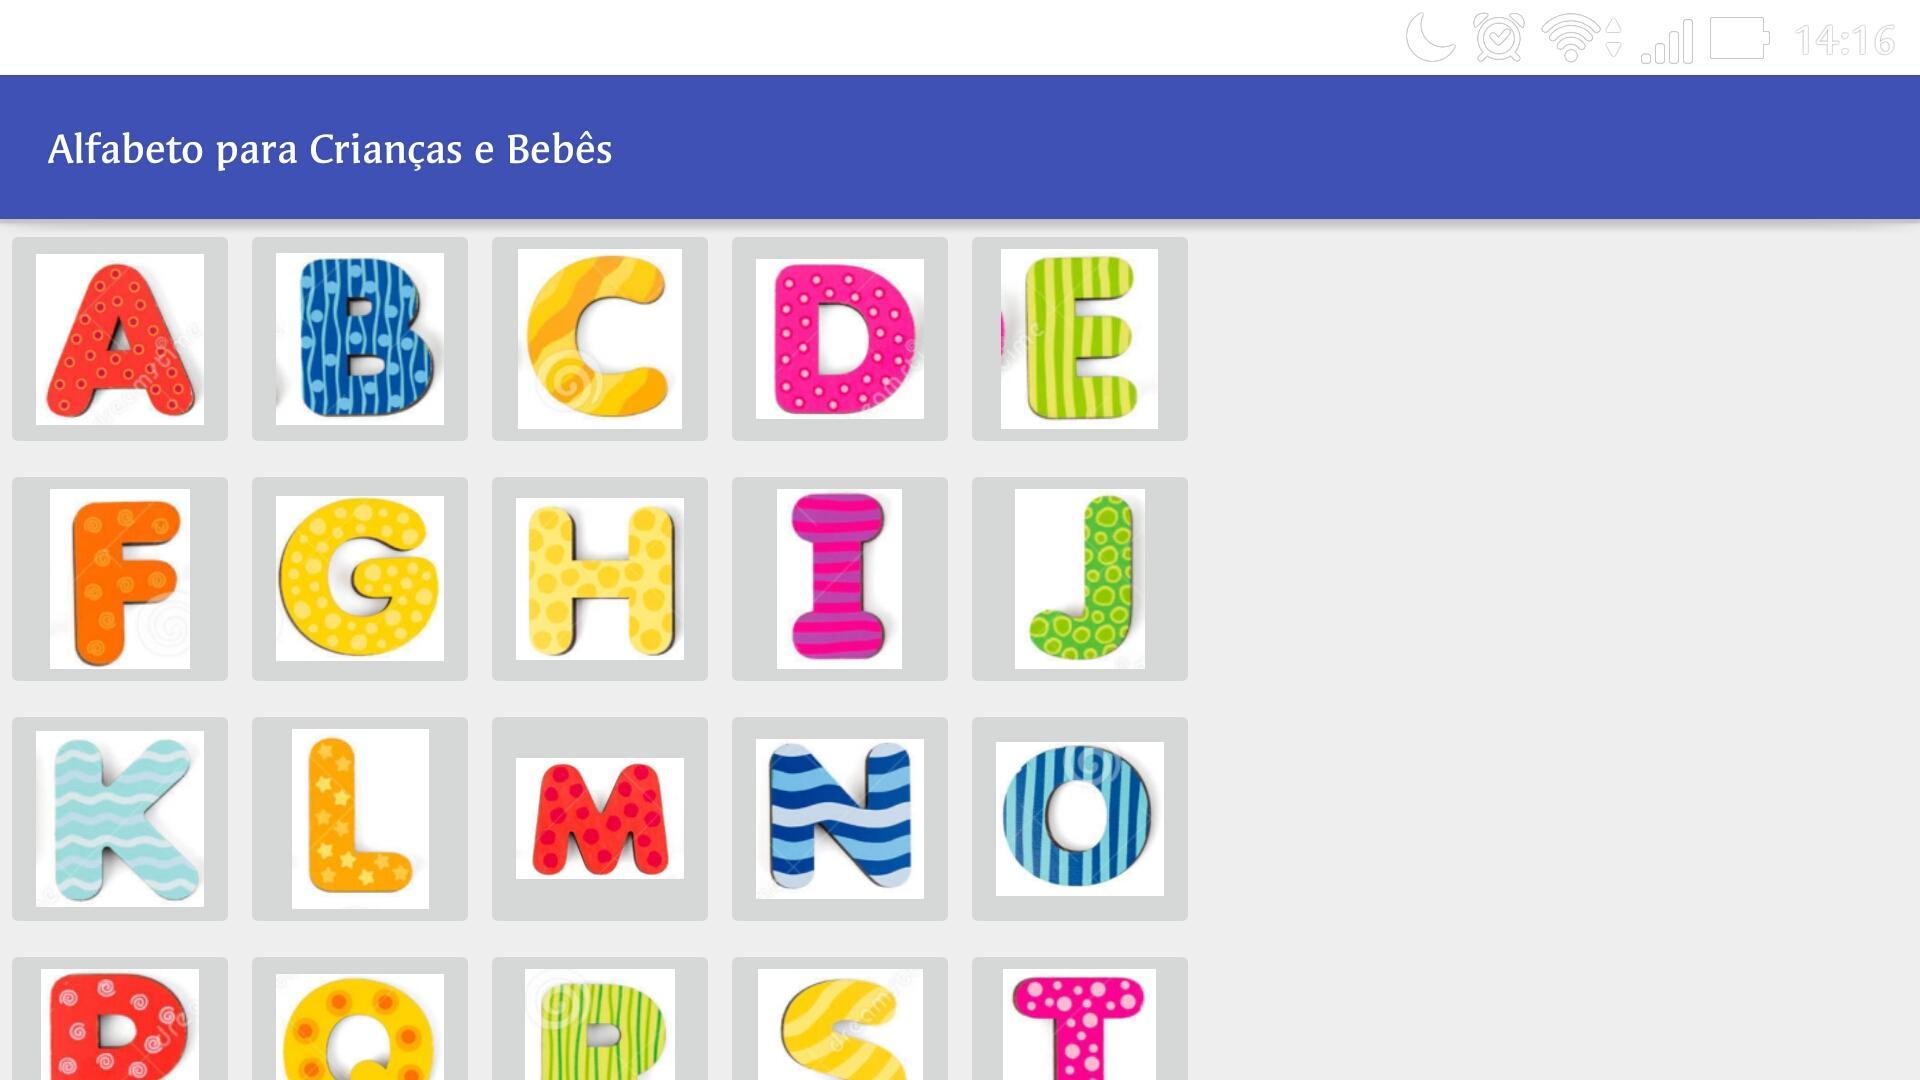 Alfabeto em Português for Android - APK Download